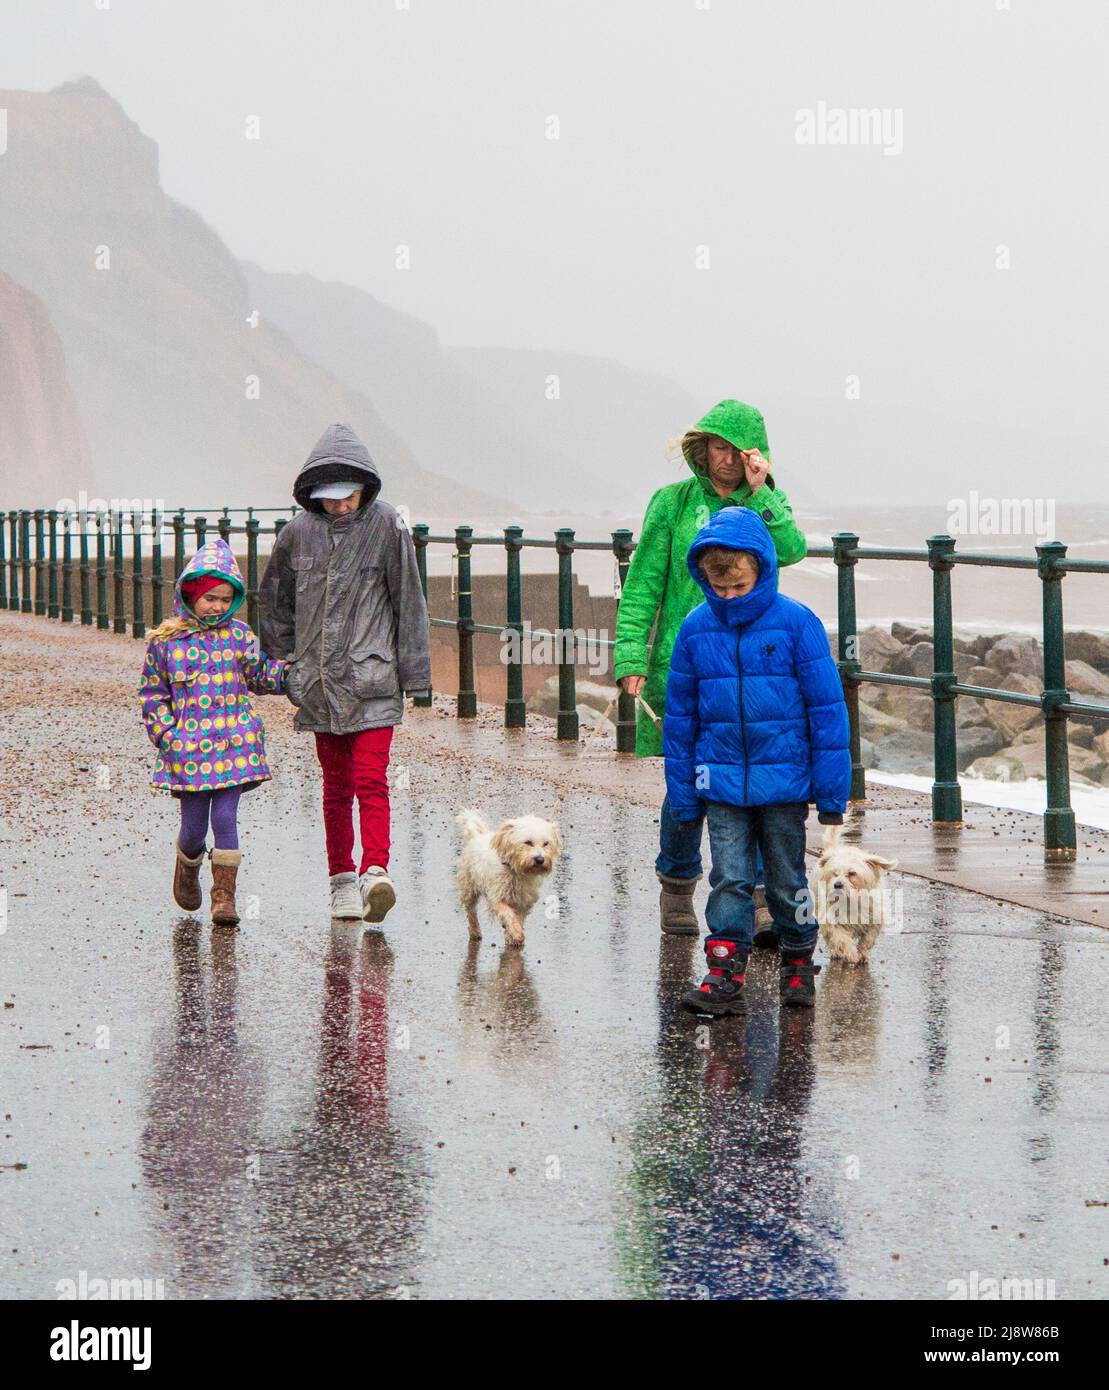 Clima del Reino Unido 27/10/2013. Sidmouth, Devon, Inglaterra. REINO UNIDO. La familia y los perros luchan contra la tormenta que se aproxima. Foto de stock